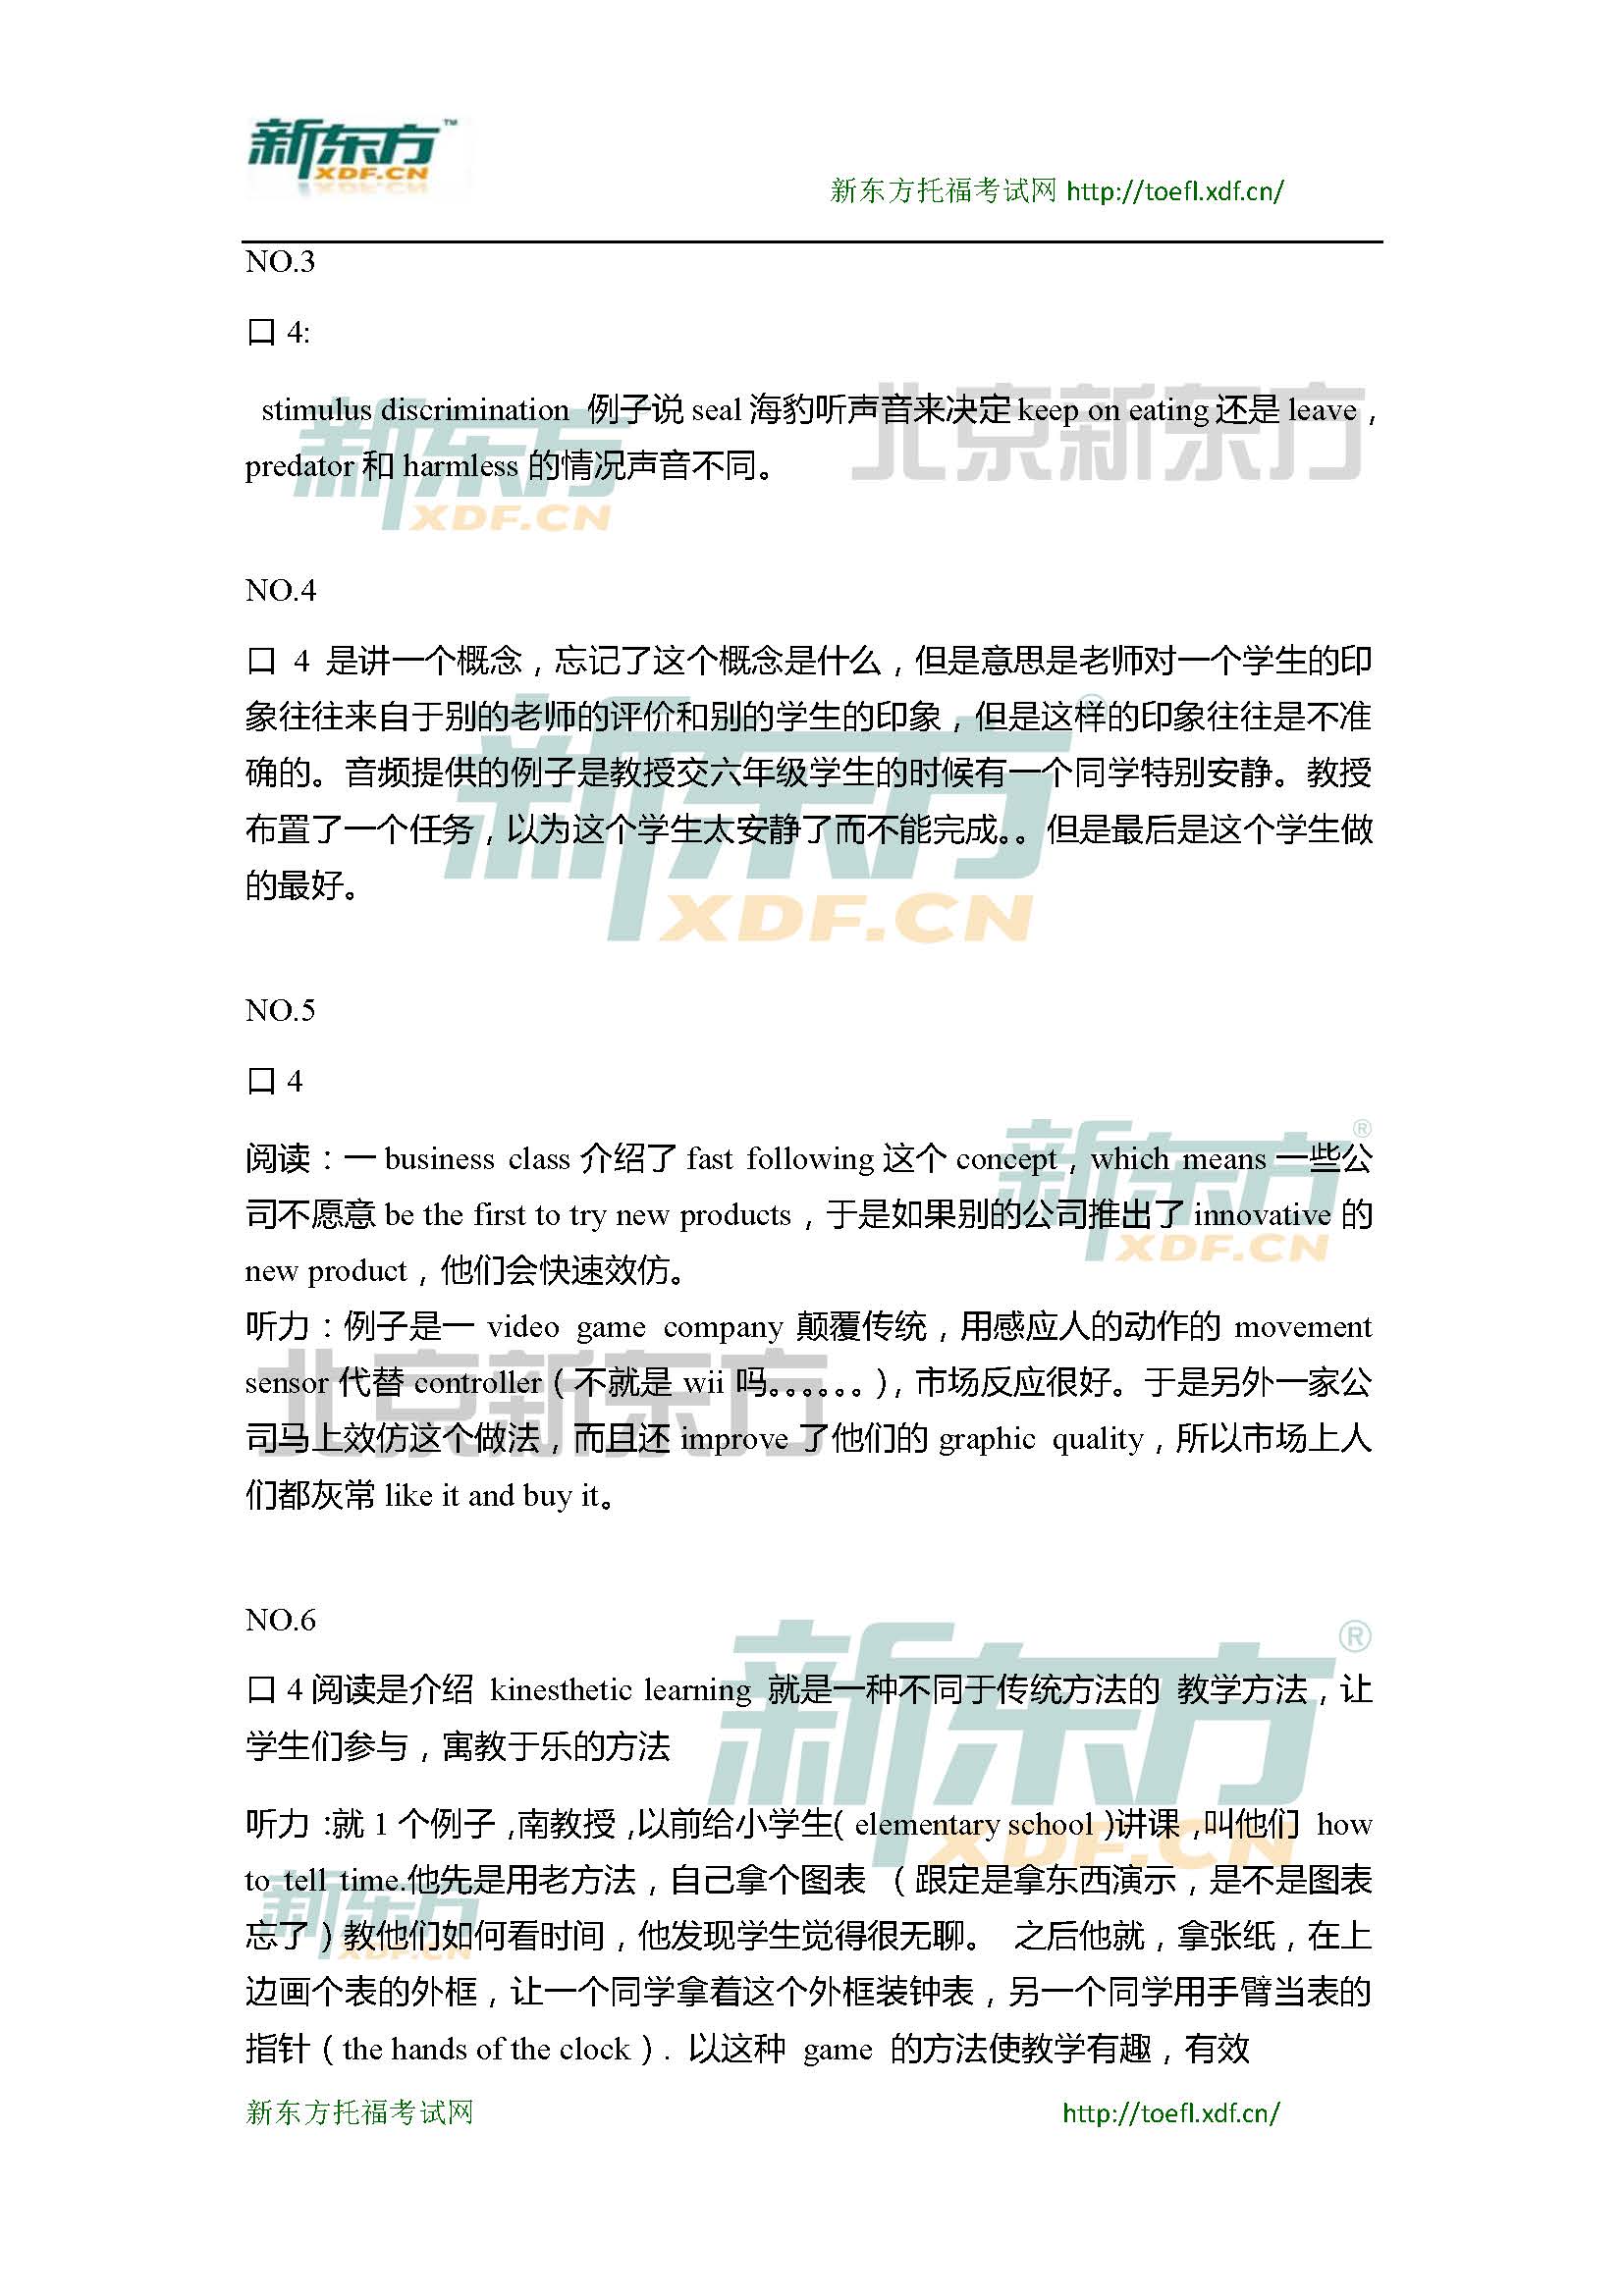 2015年4月18日托福口语超级小范围预测(6套题)